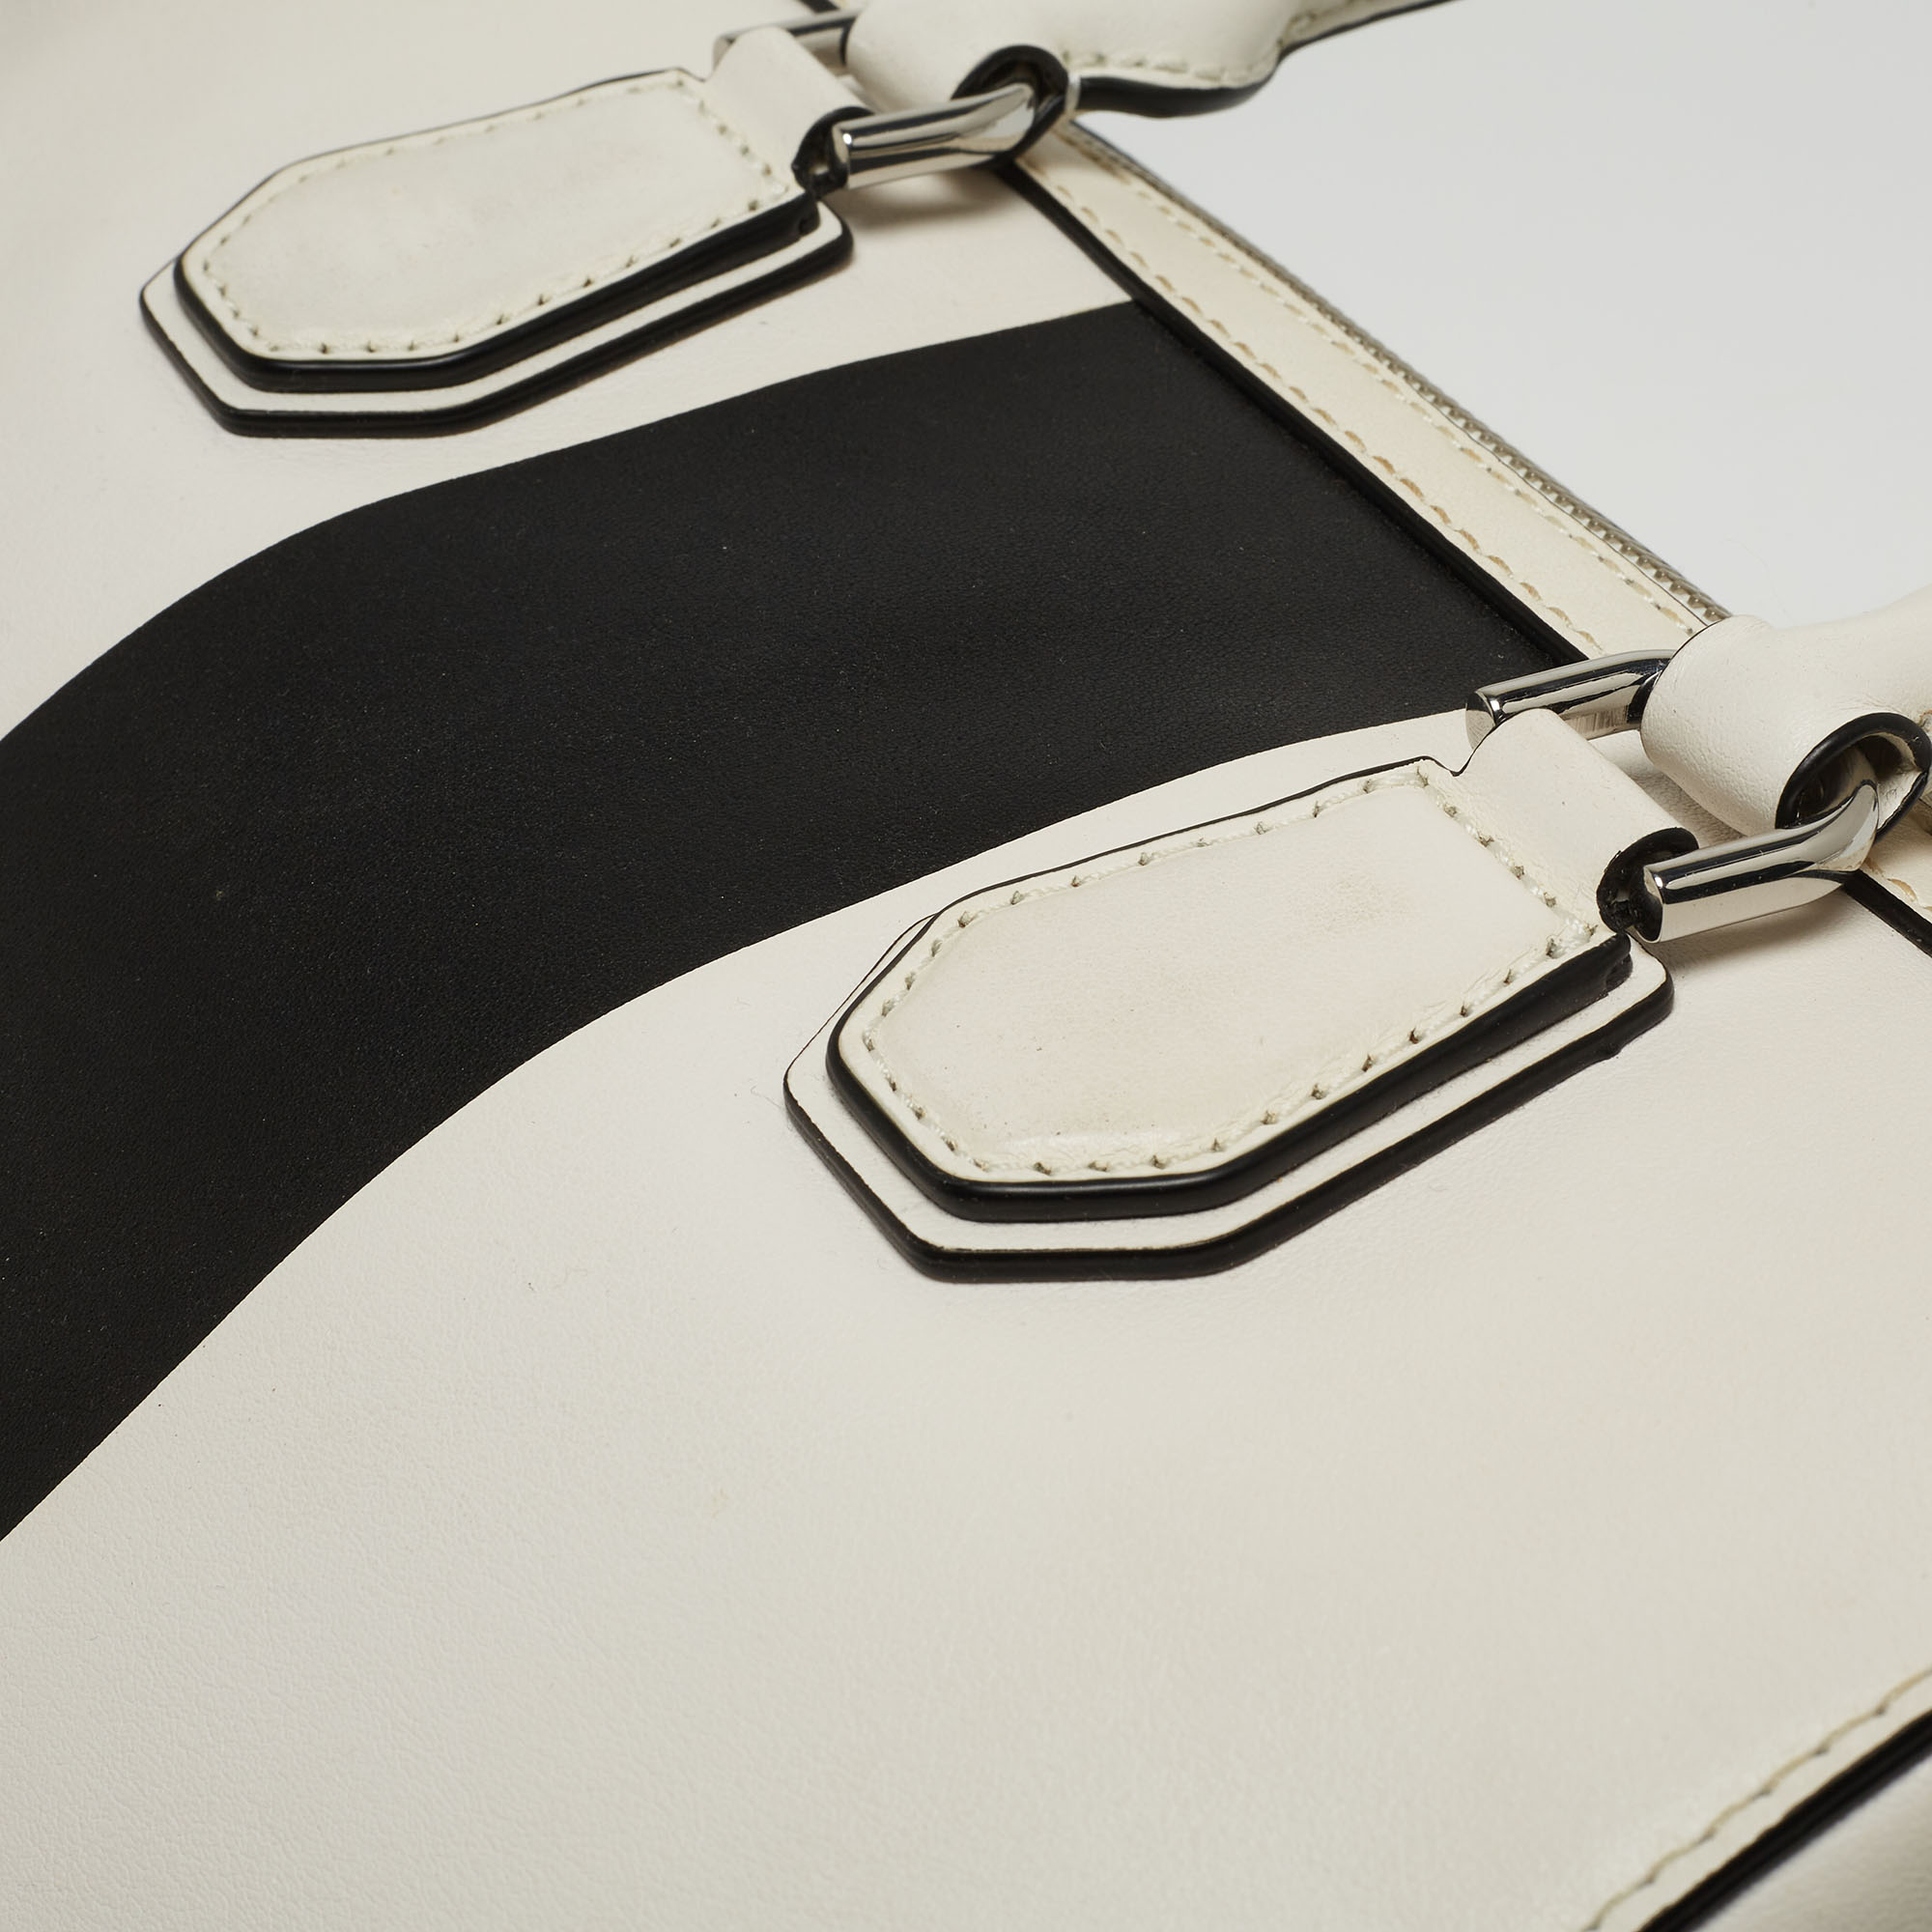 Michael Kors White/Black Leather Medium Center Stripe Mercer Duffle Bag